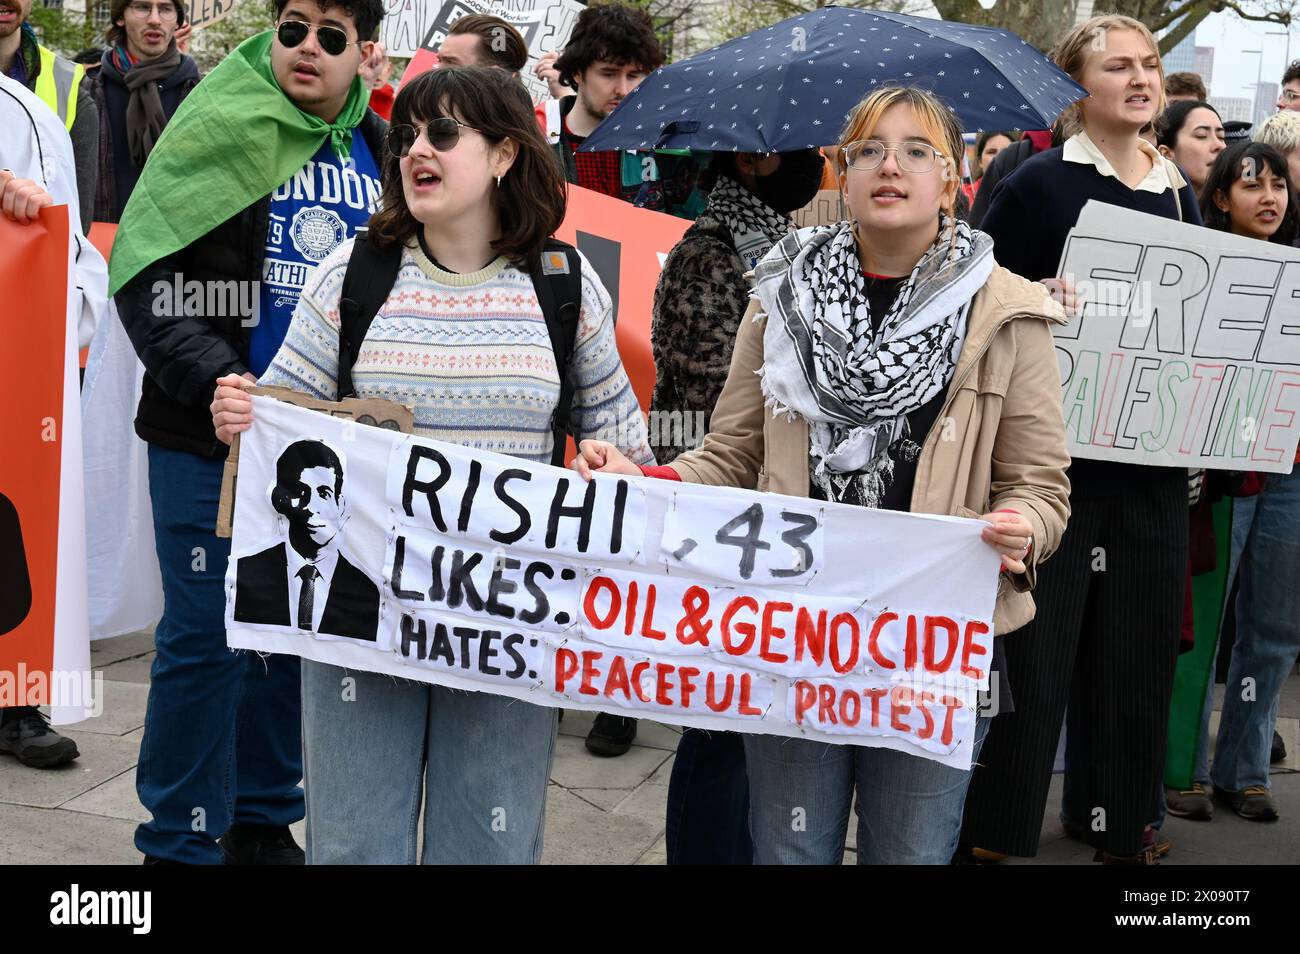 Londres, Royaume-Uni. Les groupes activistes Youth Demand et Palestine action se sont associés pour protester en faveur d'un embargo sur les armes et de la fin de tout développement des combustibles fossiles au Royaume-Uni. Crédit : michael melia/Alamy Live News Banque D'Images